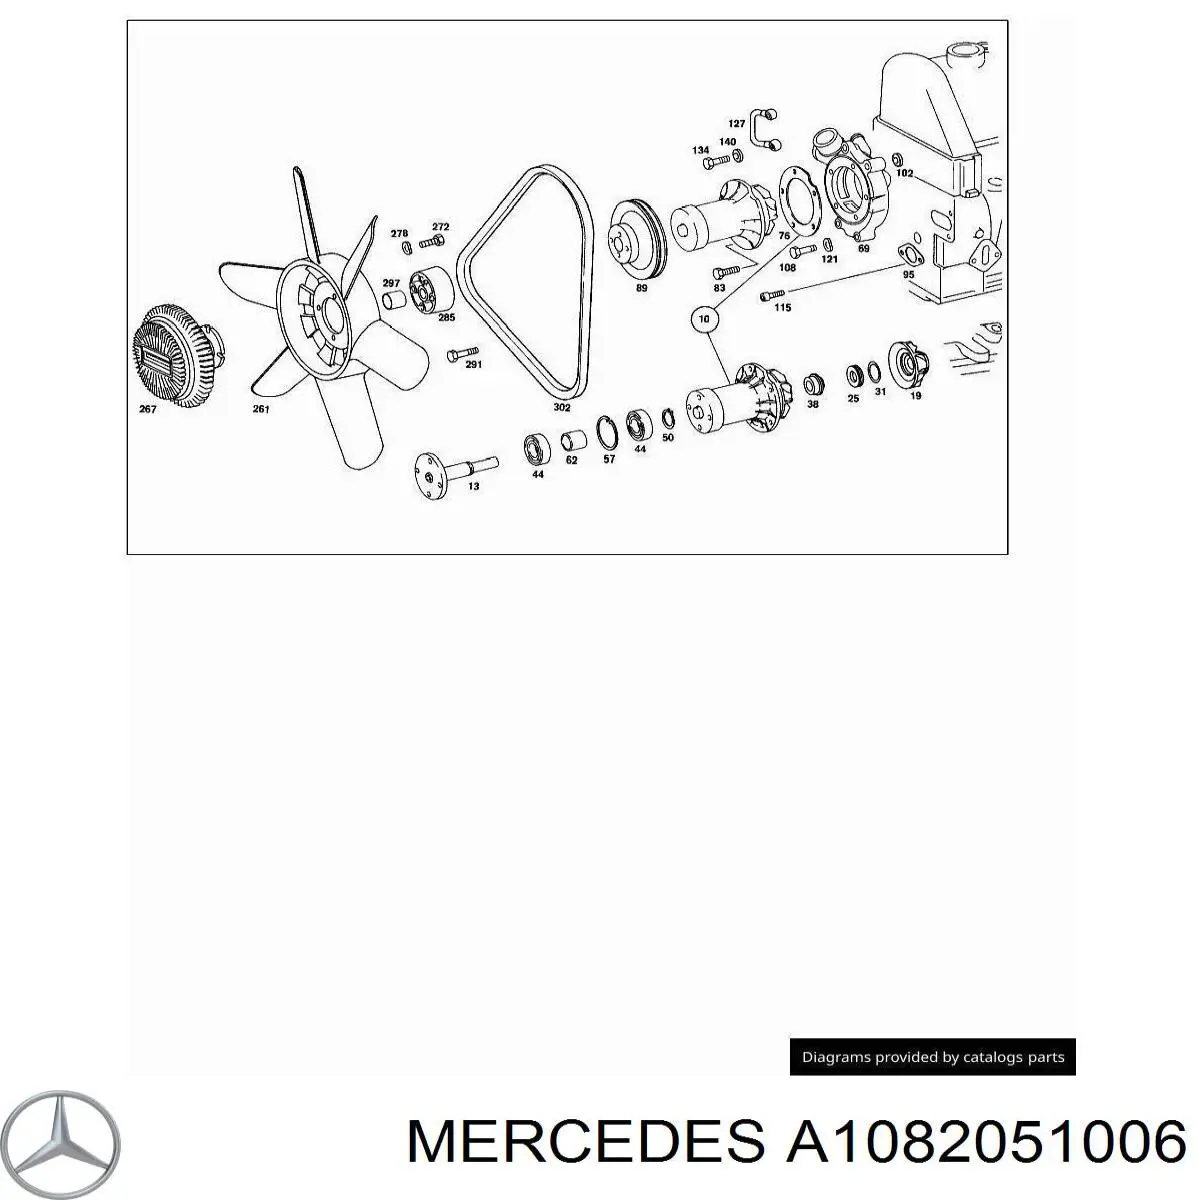 A1082051006 Mercedes rodete ventilador, refrigeración de motor